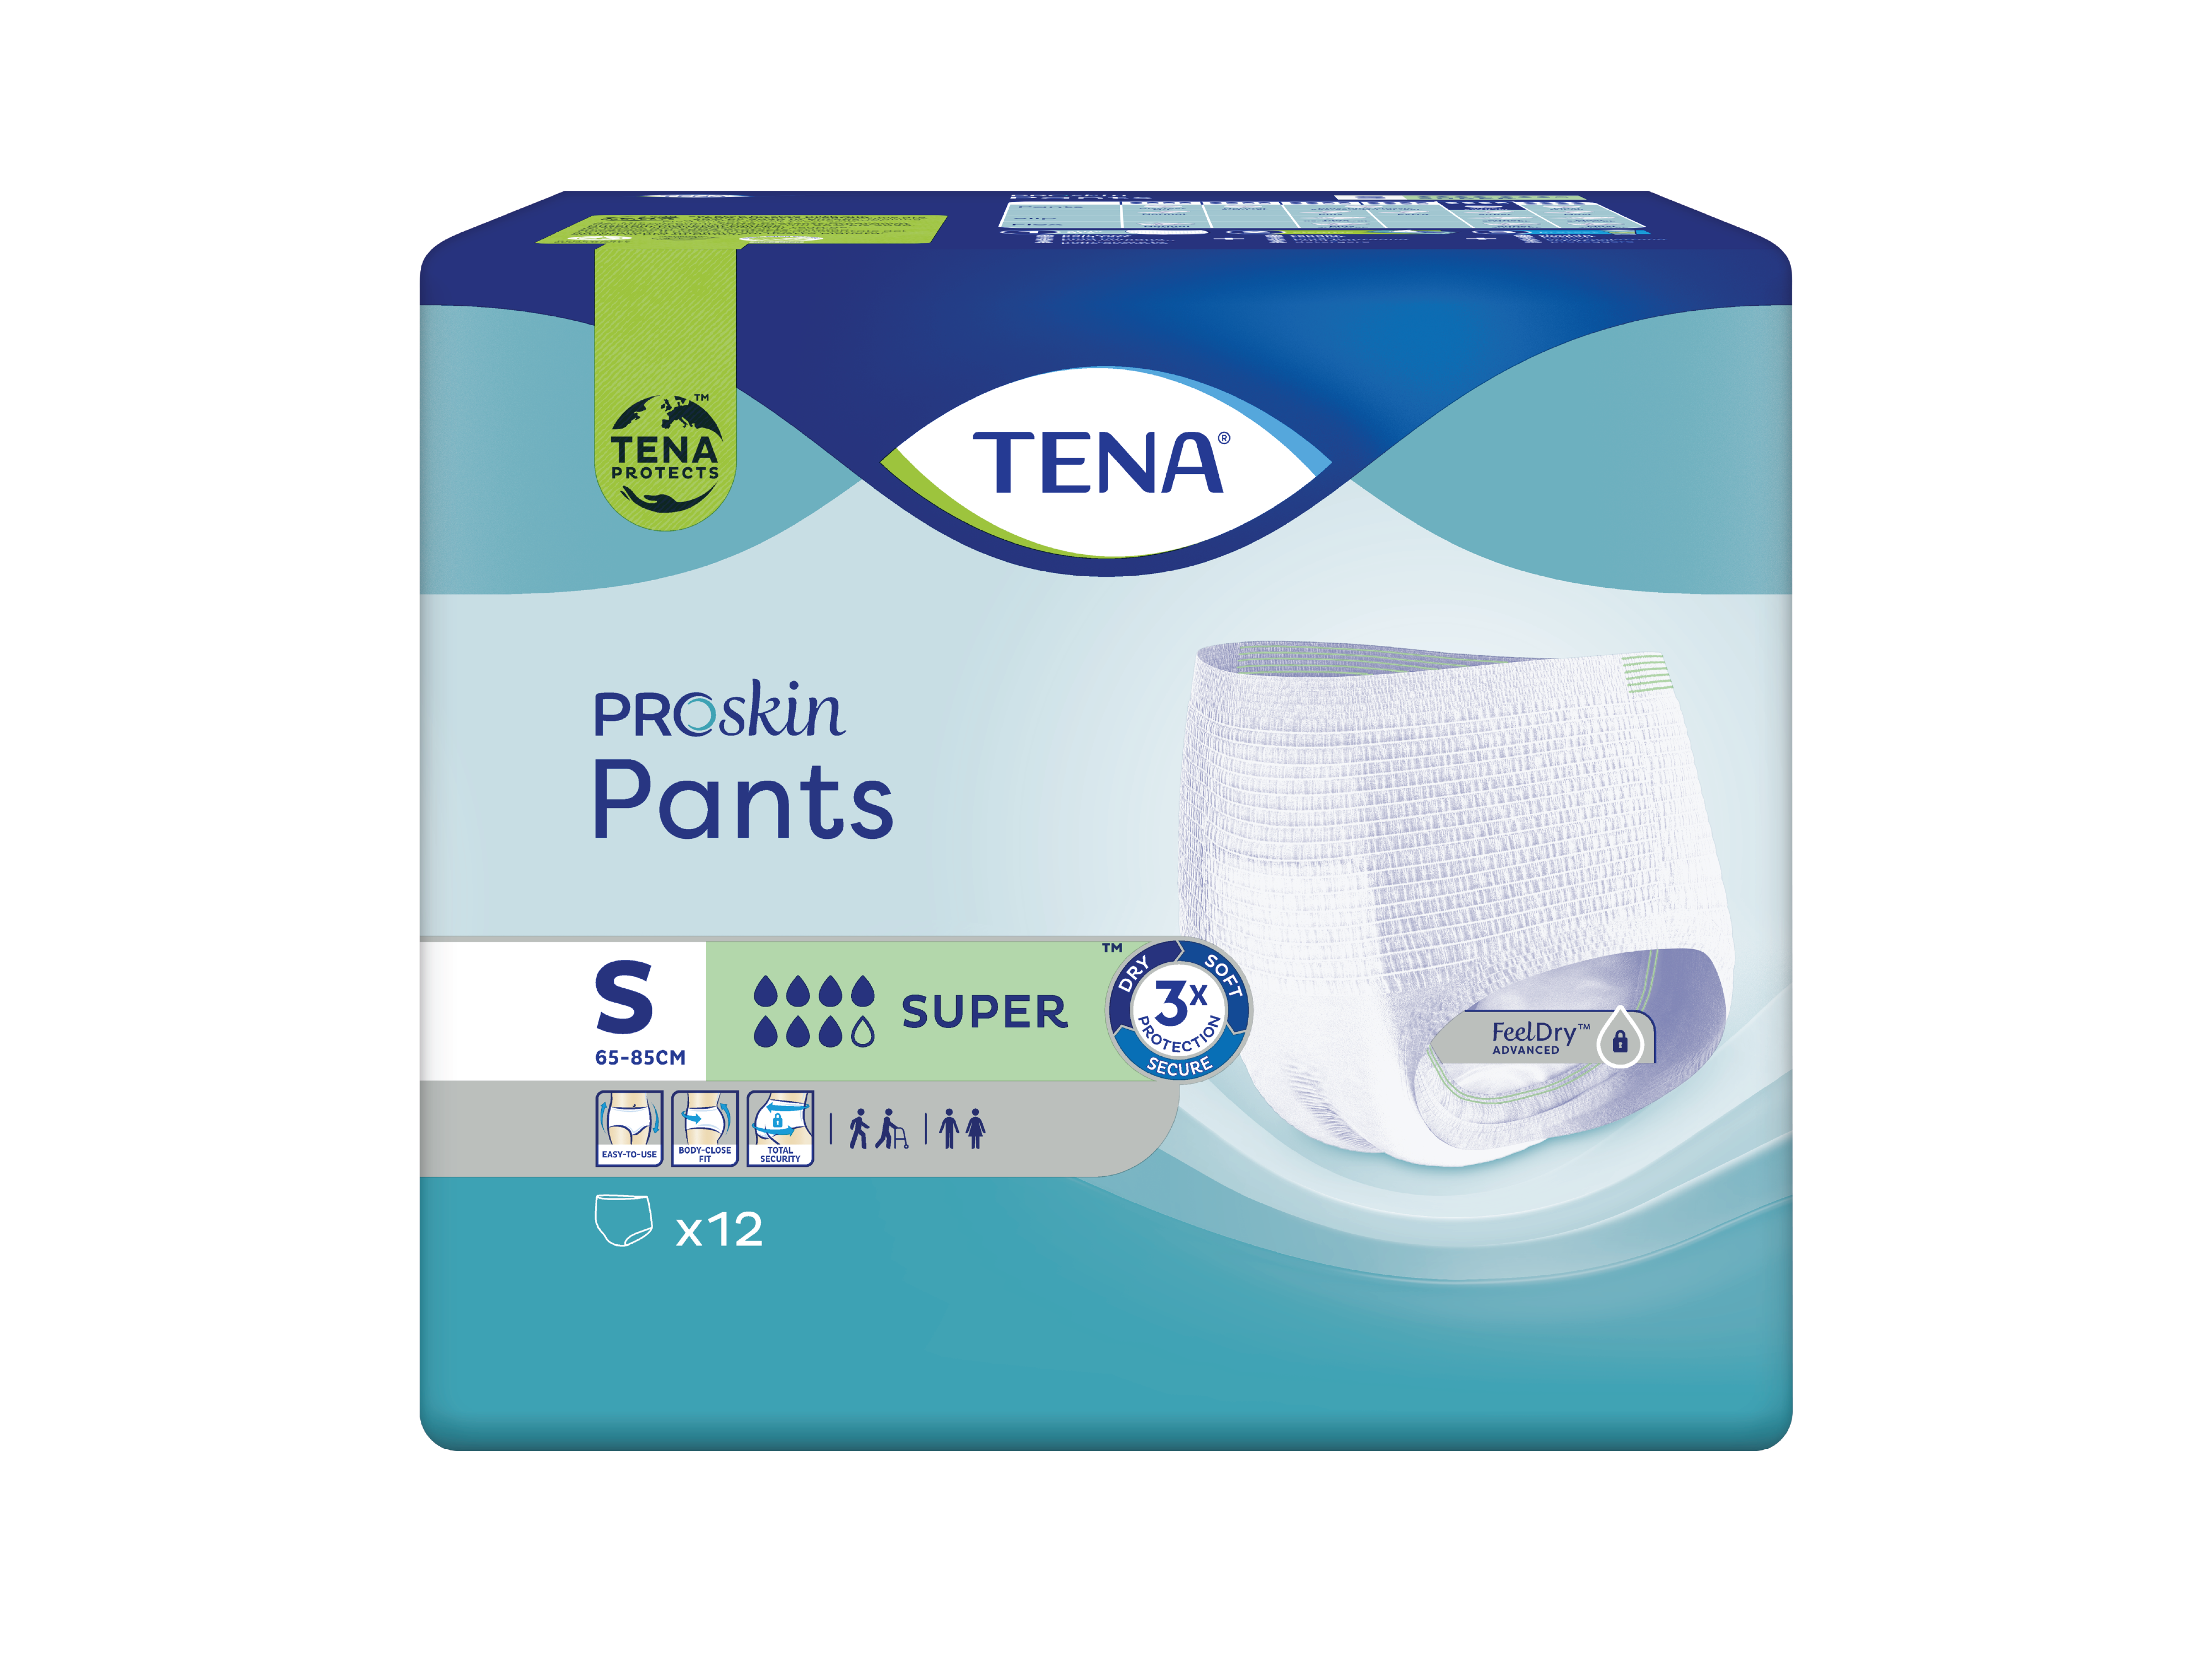 Tena Proskin Pants Super S, Small, 12 stk.